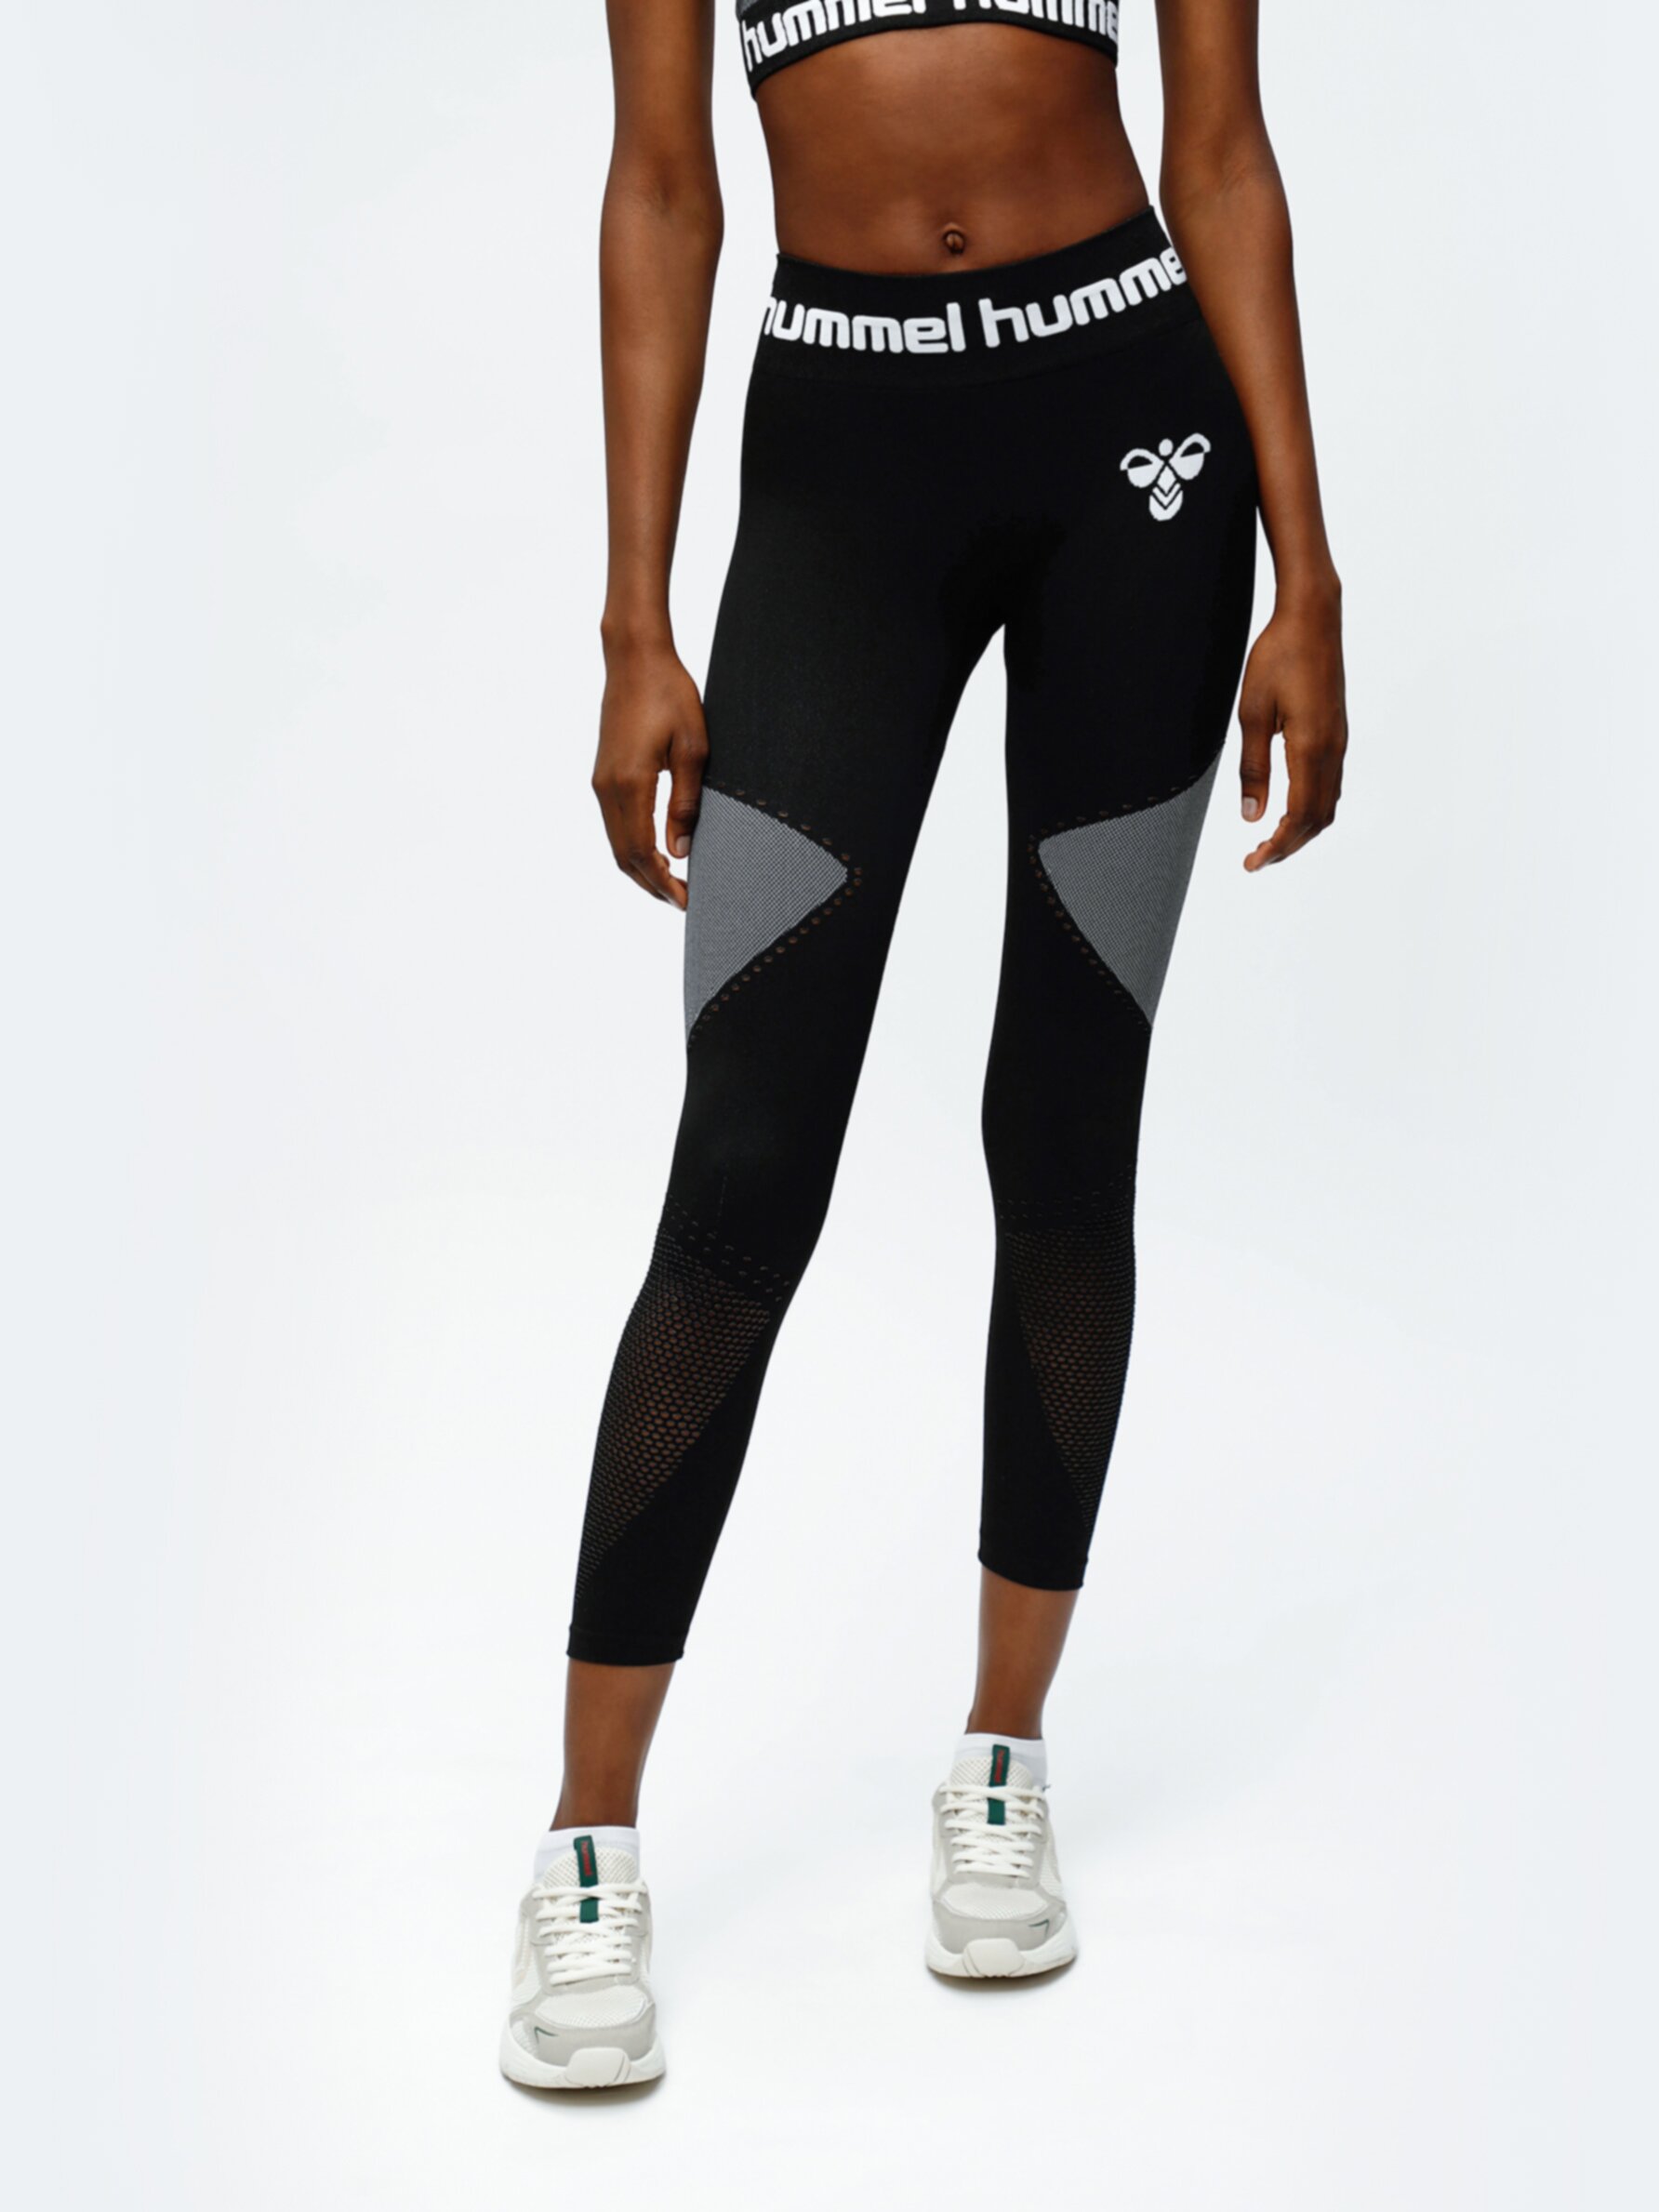 Seamless Hummel x Lefties leggings - Sports Bras - Sportswear - CLOTHING -  Woman - | Lefties Turkey | Sport-Leggings